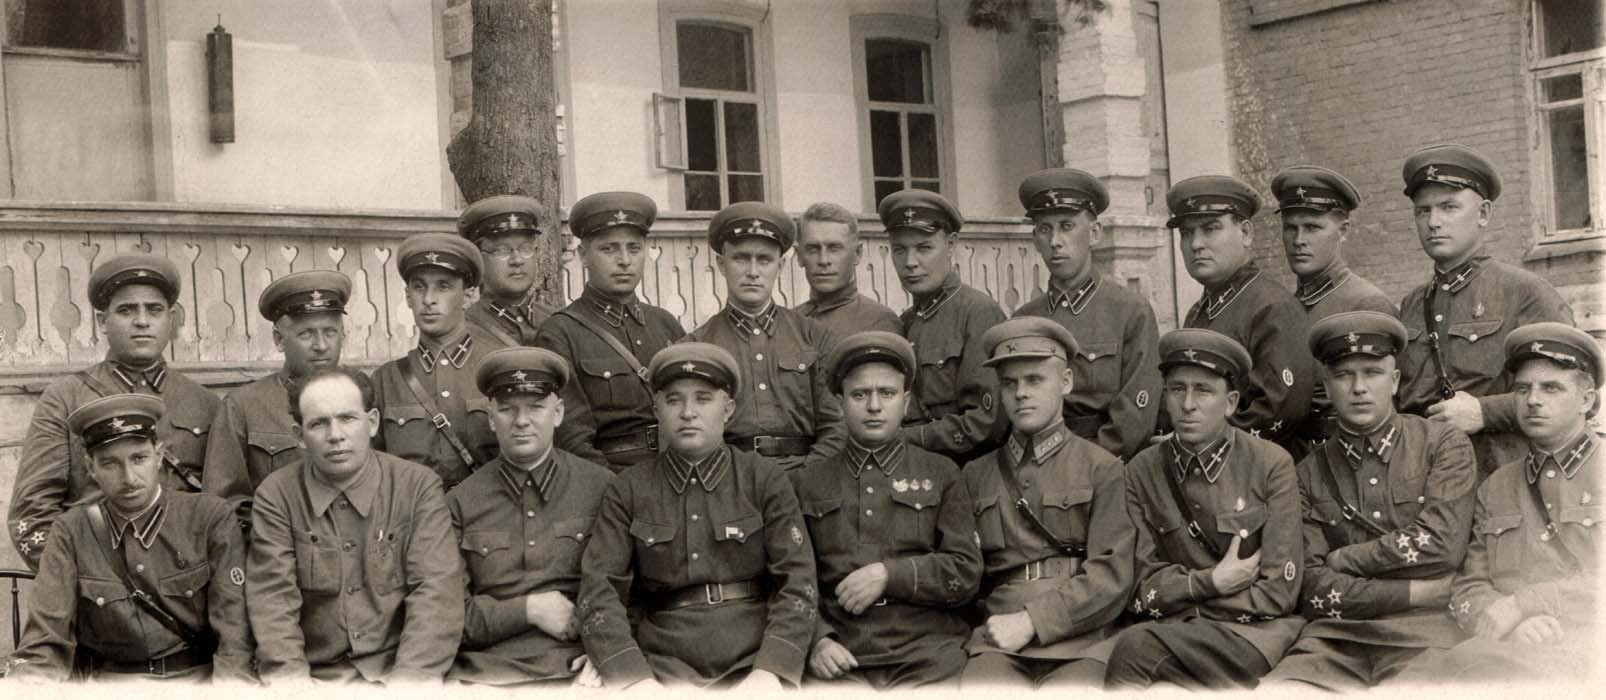   O nouă promoţie de ofiţeri NKVD (1939-1940). Credit: www.reddit.com